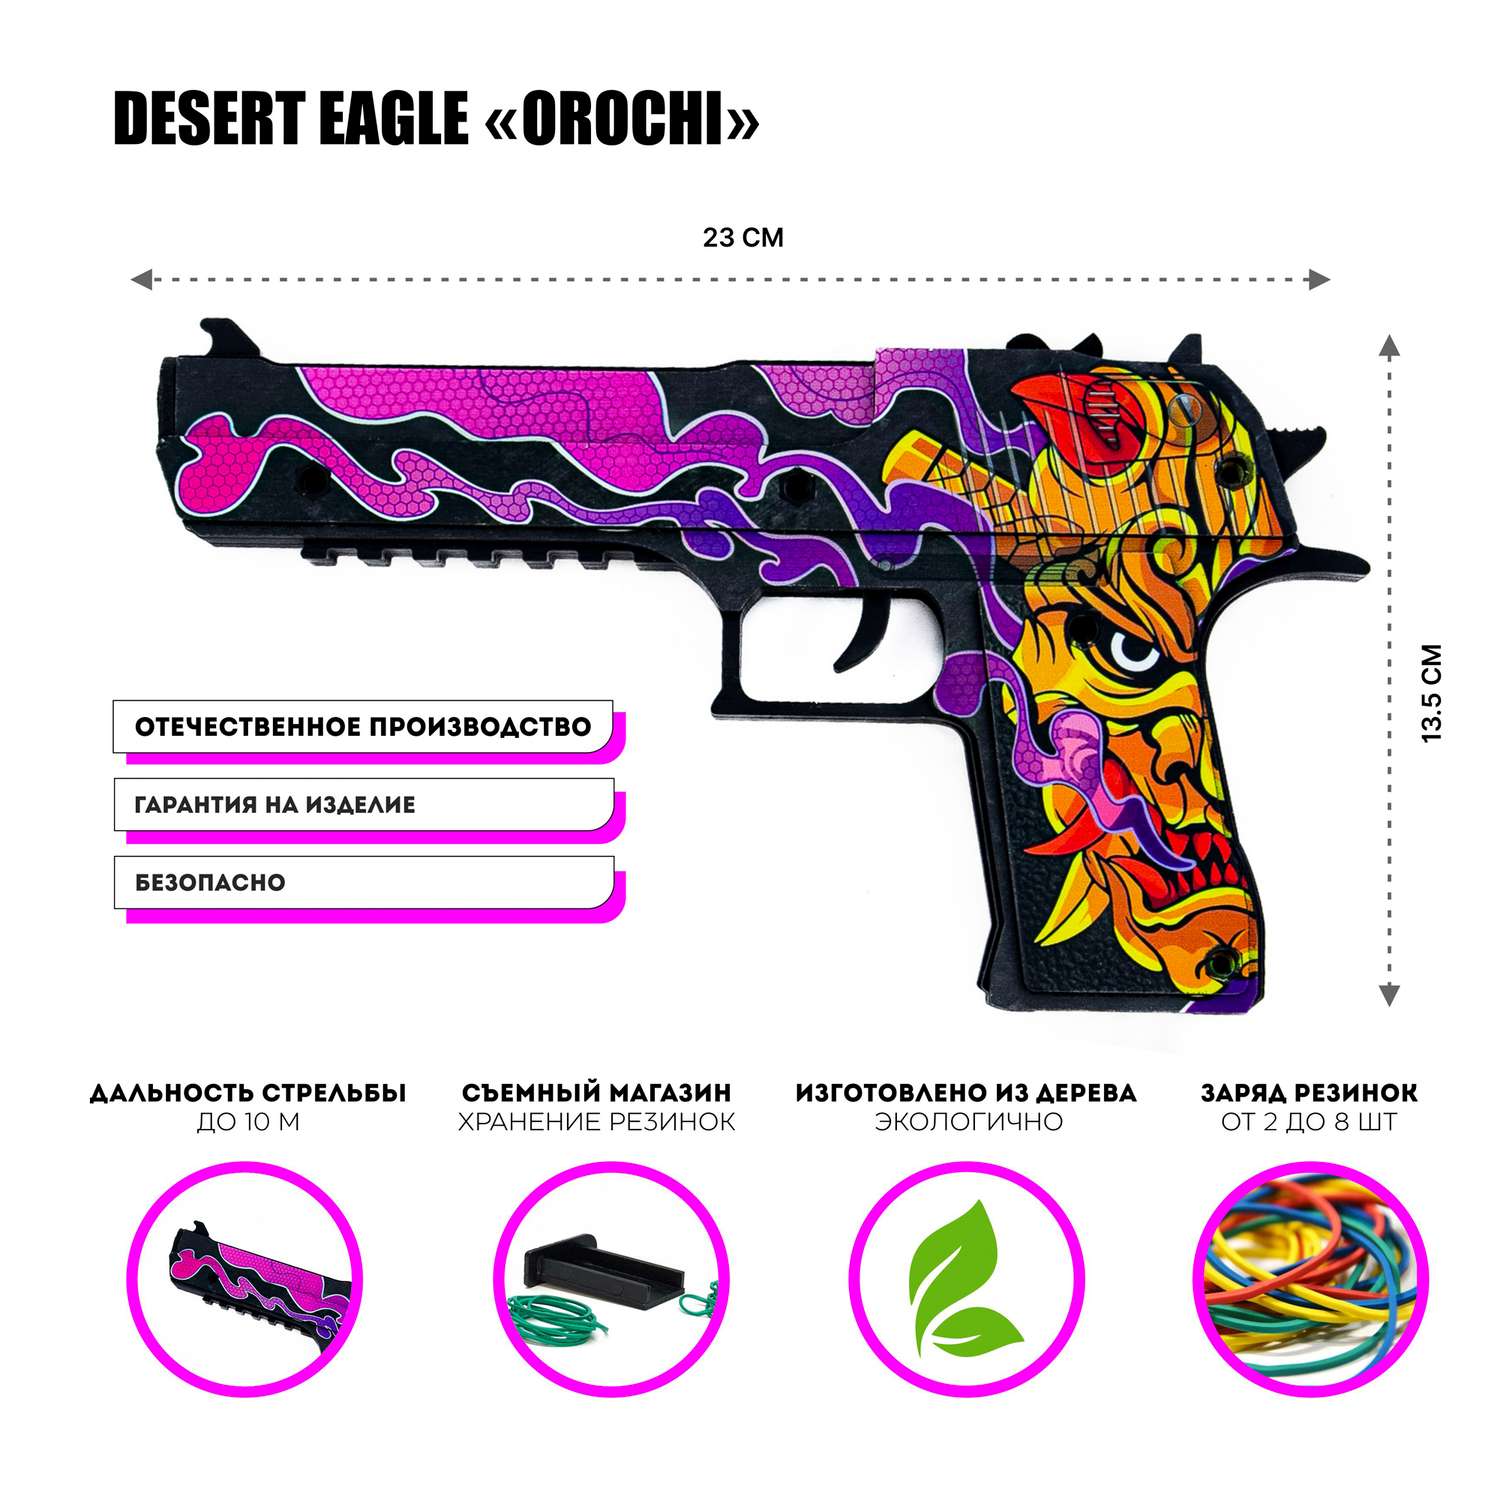 Деревянный пистолет PalisWood Desert Eagle резинкострел Орочи - фото 2